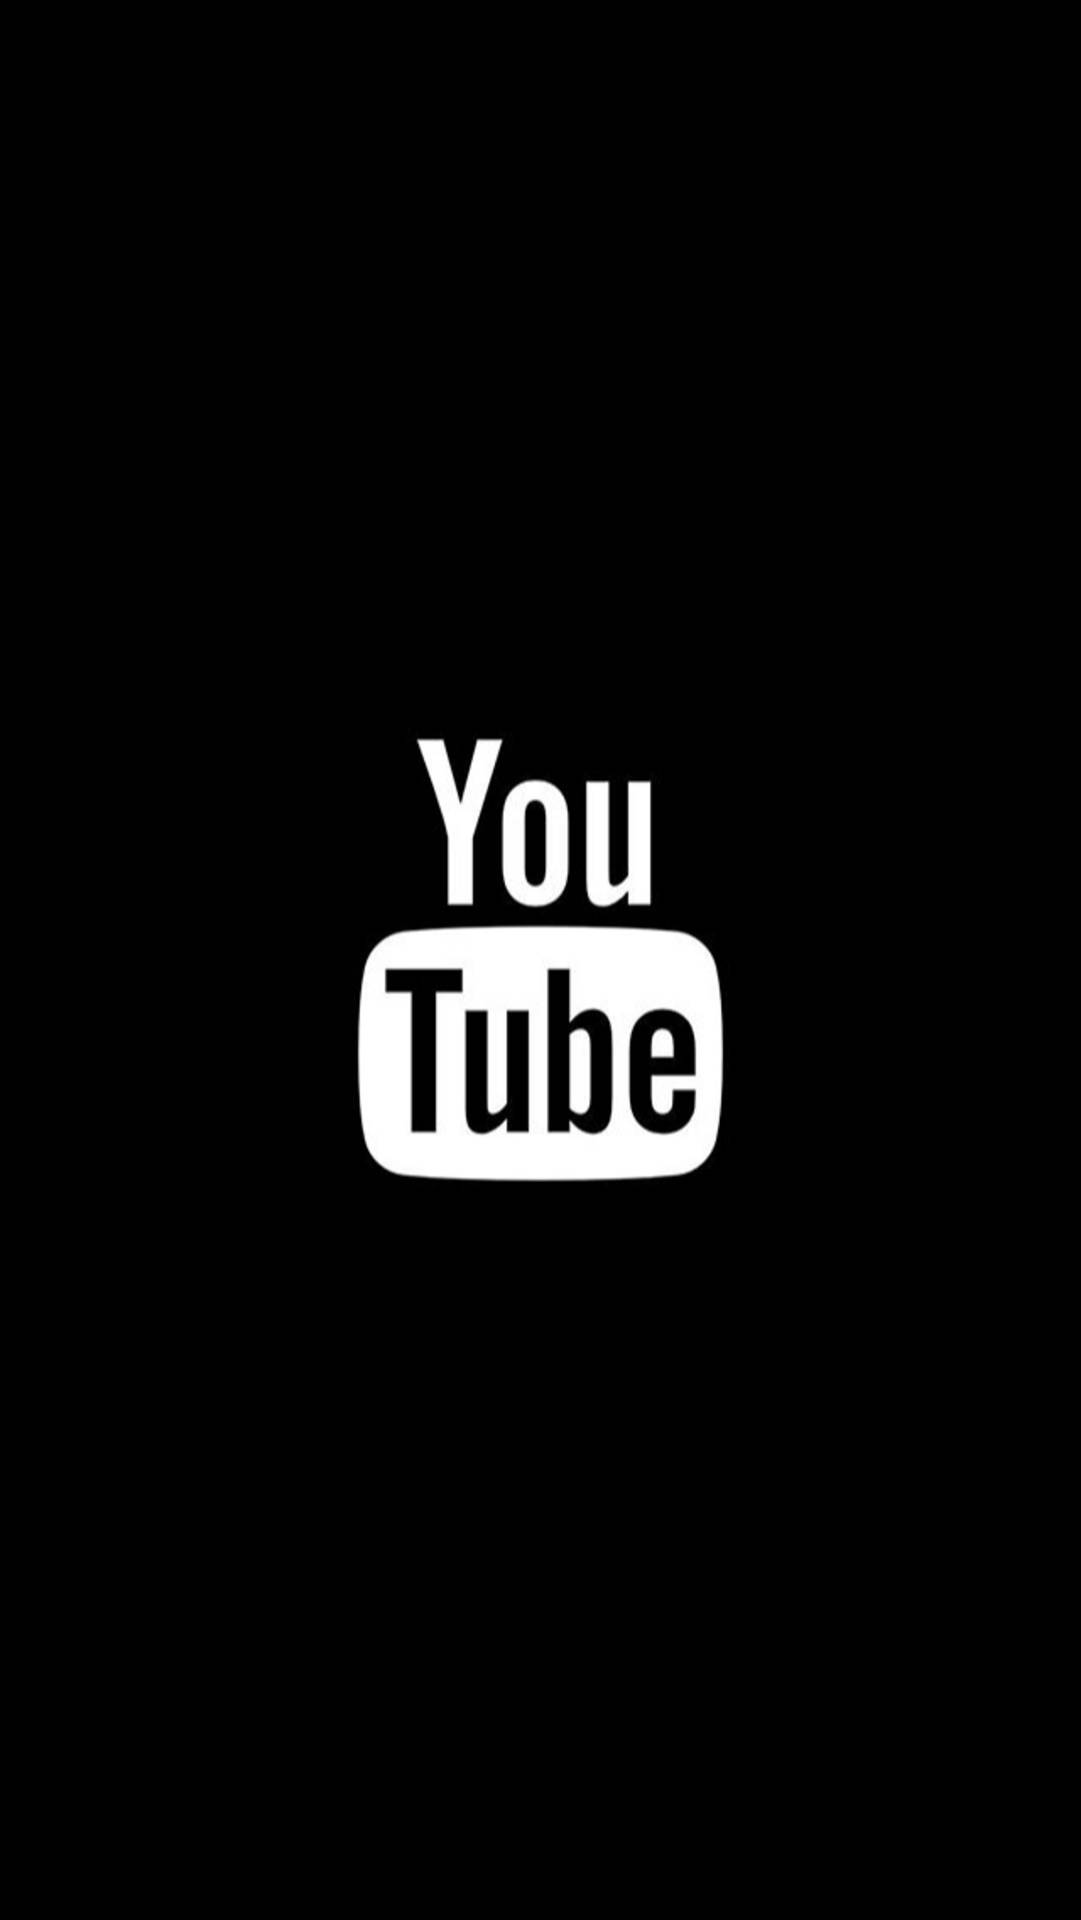 Black And White Youtube Logo Background